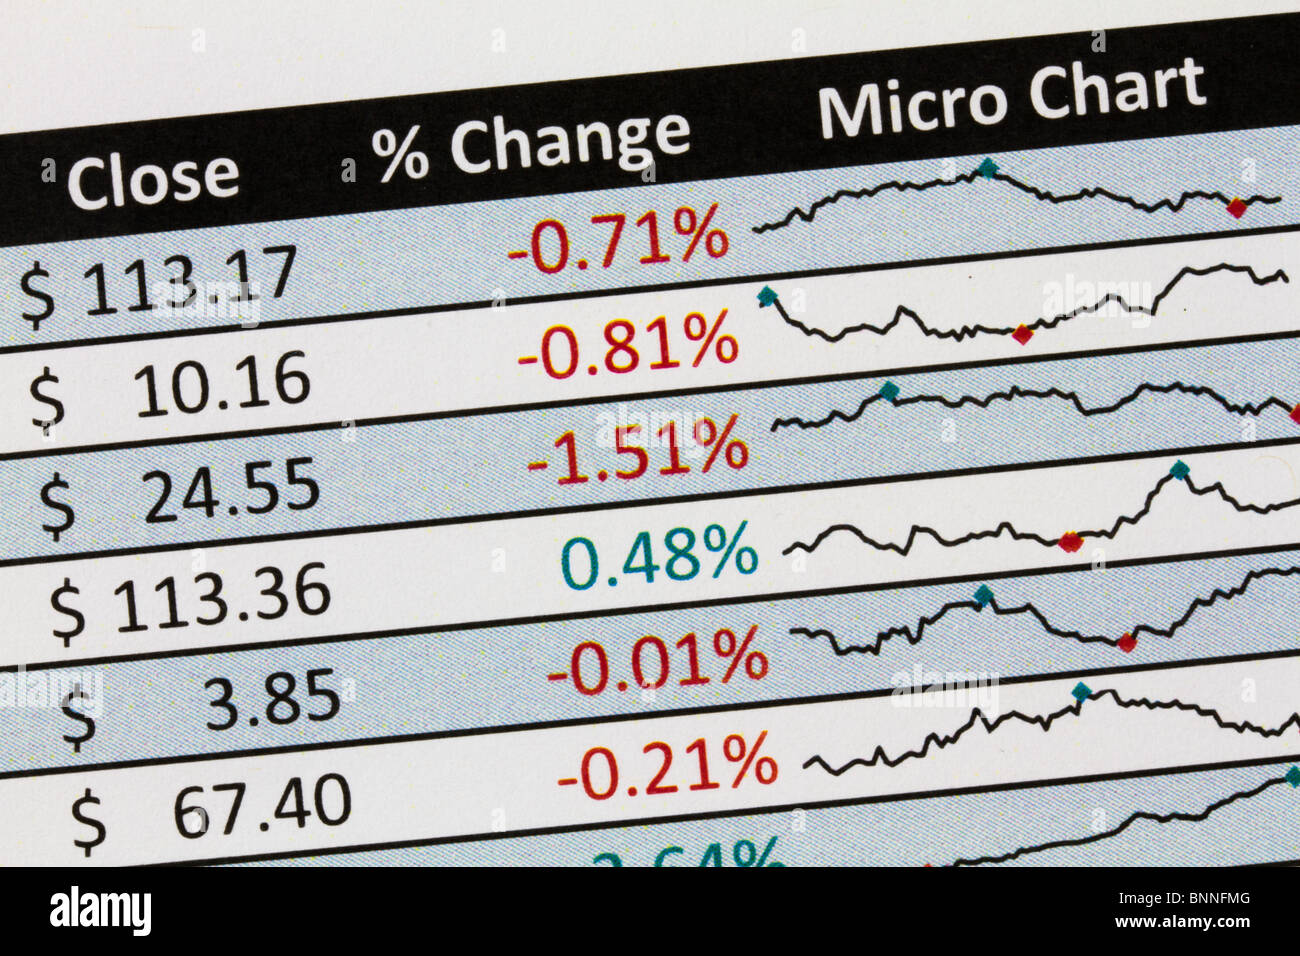 Bnn Stock Charts